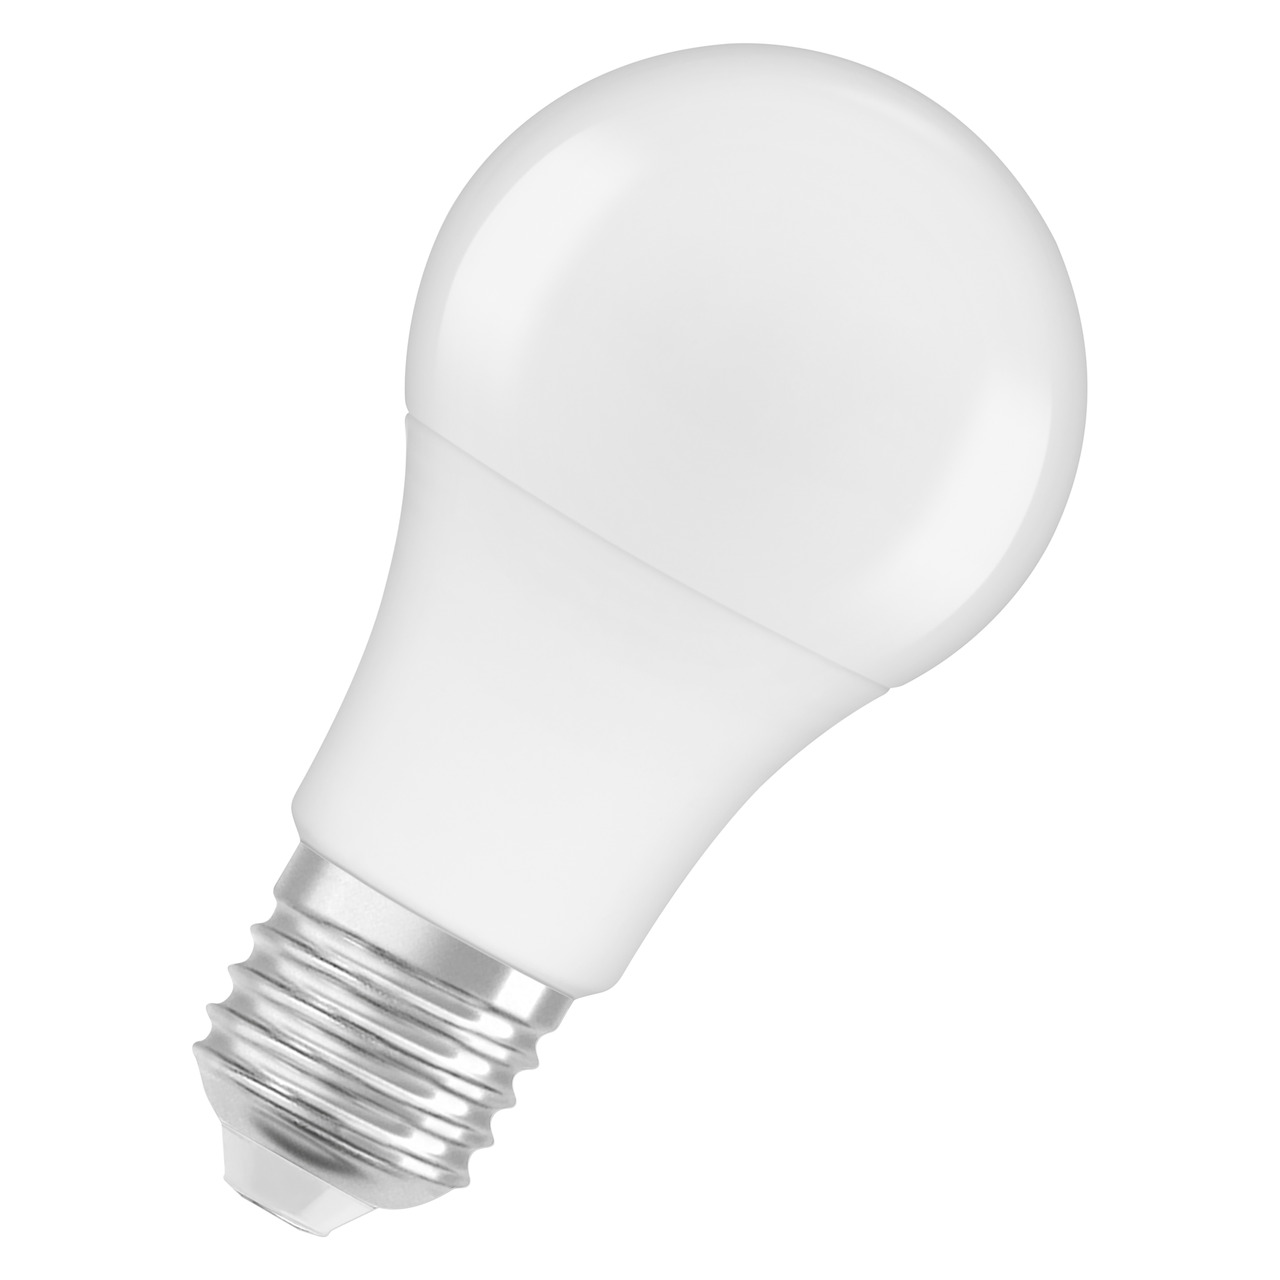 OSRAM 8-5-W-LED-Lampe A60- E27- 806 lm- kaltweiss- matt unter Beleuchtung